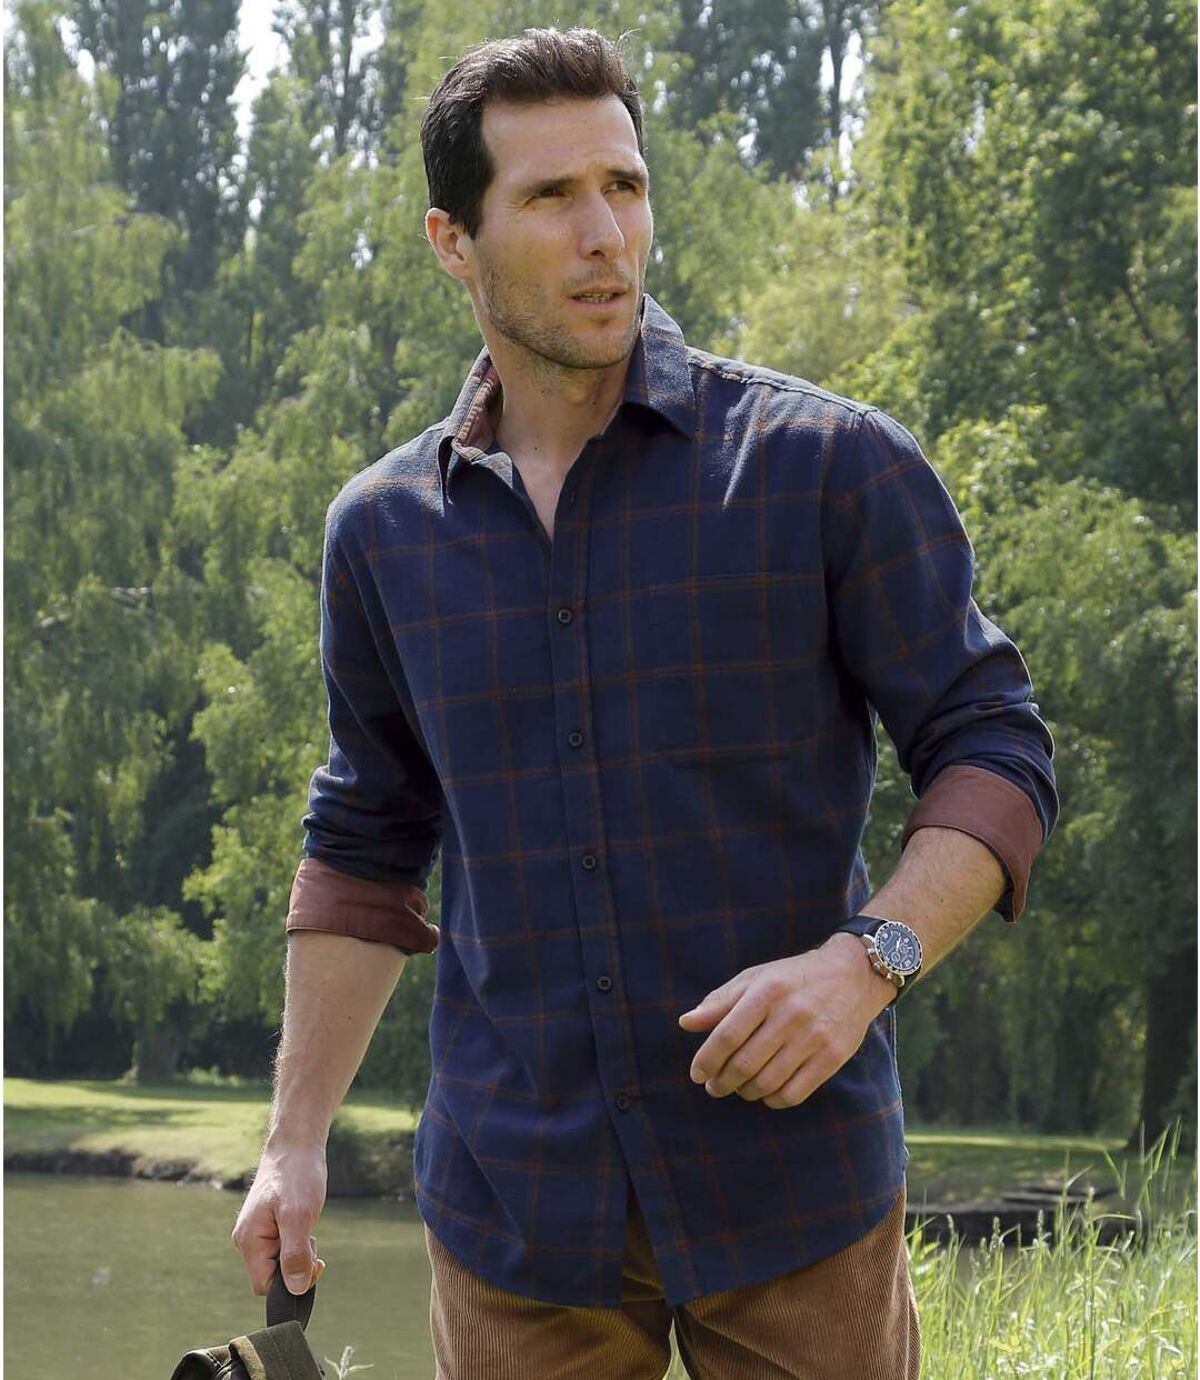 Men's Blue Flannel Checked Shirt Atlas For Men